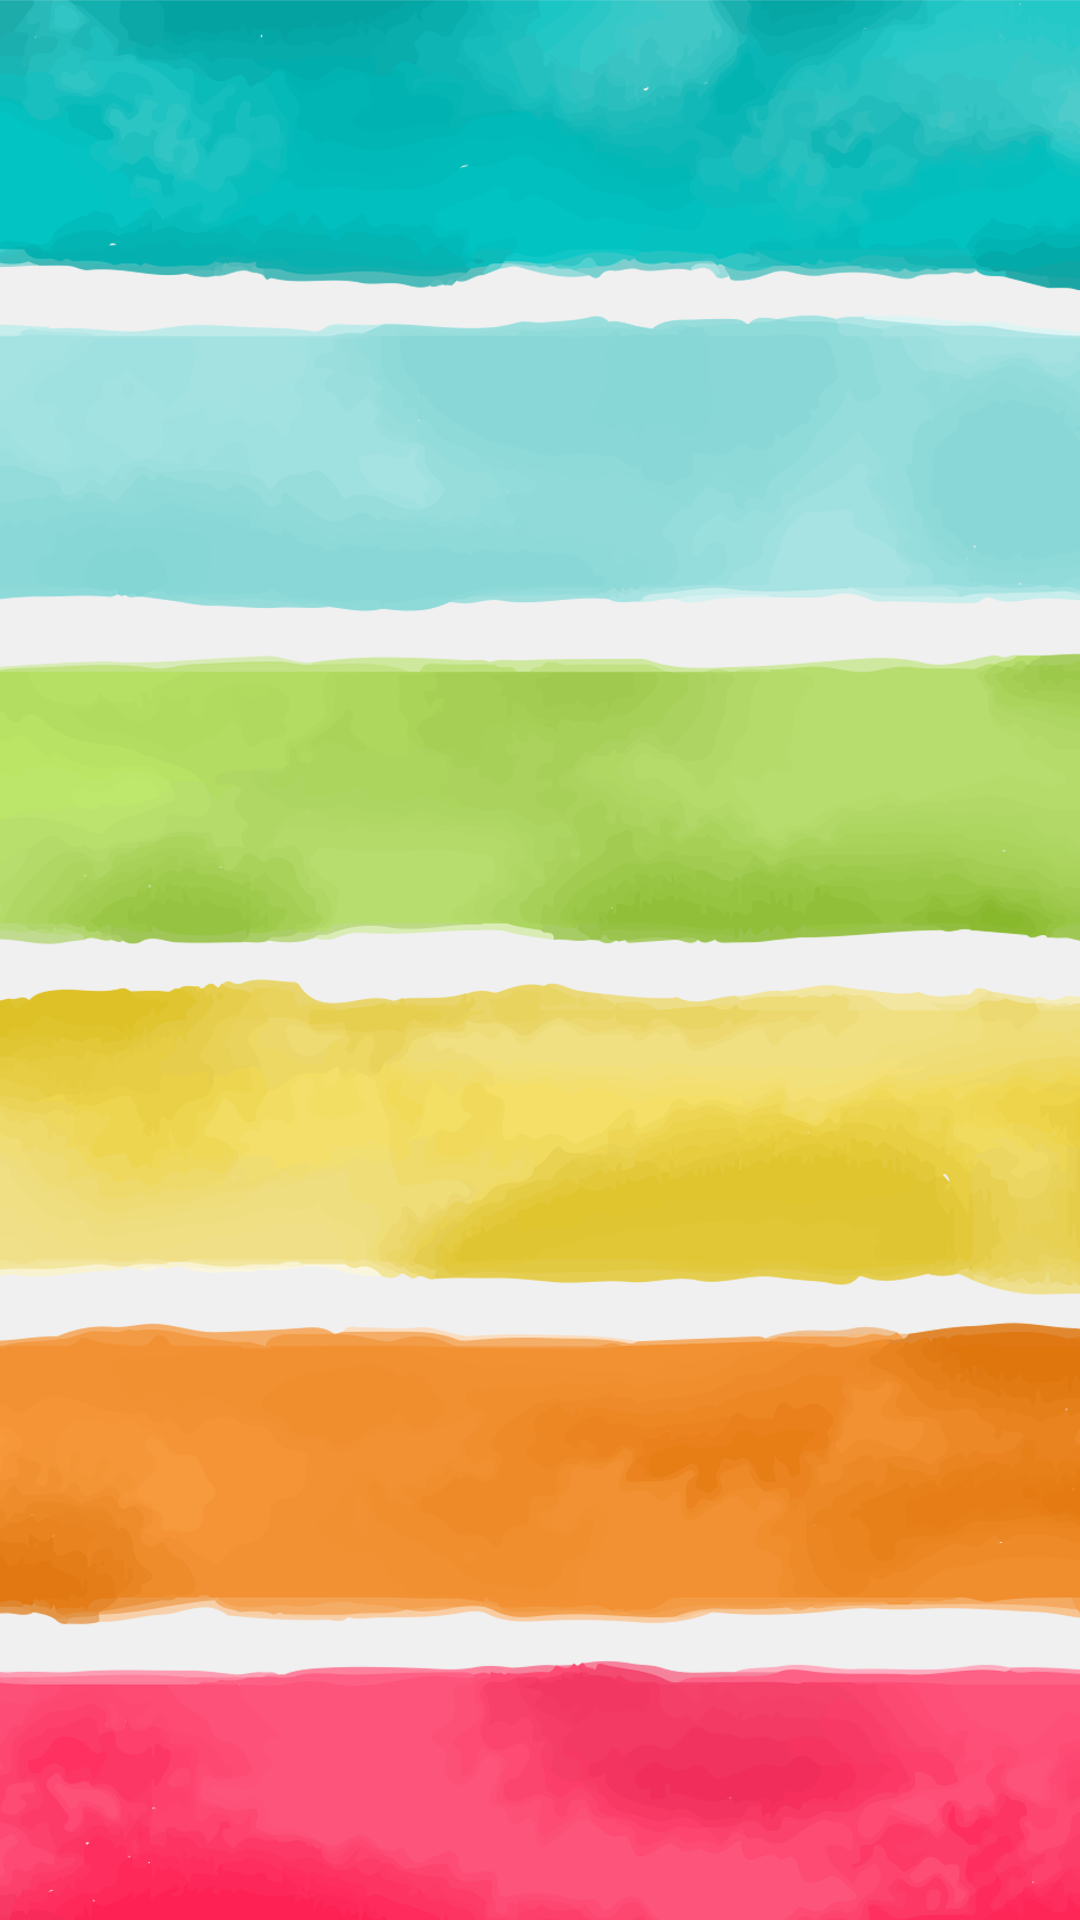 모바일 hd 물 배경 화면,노랑,초록